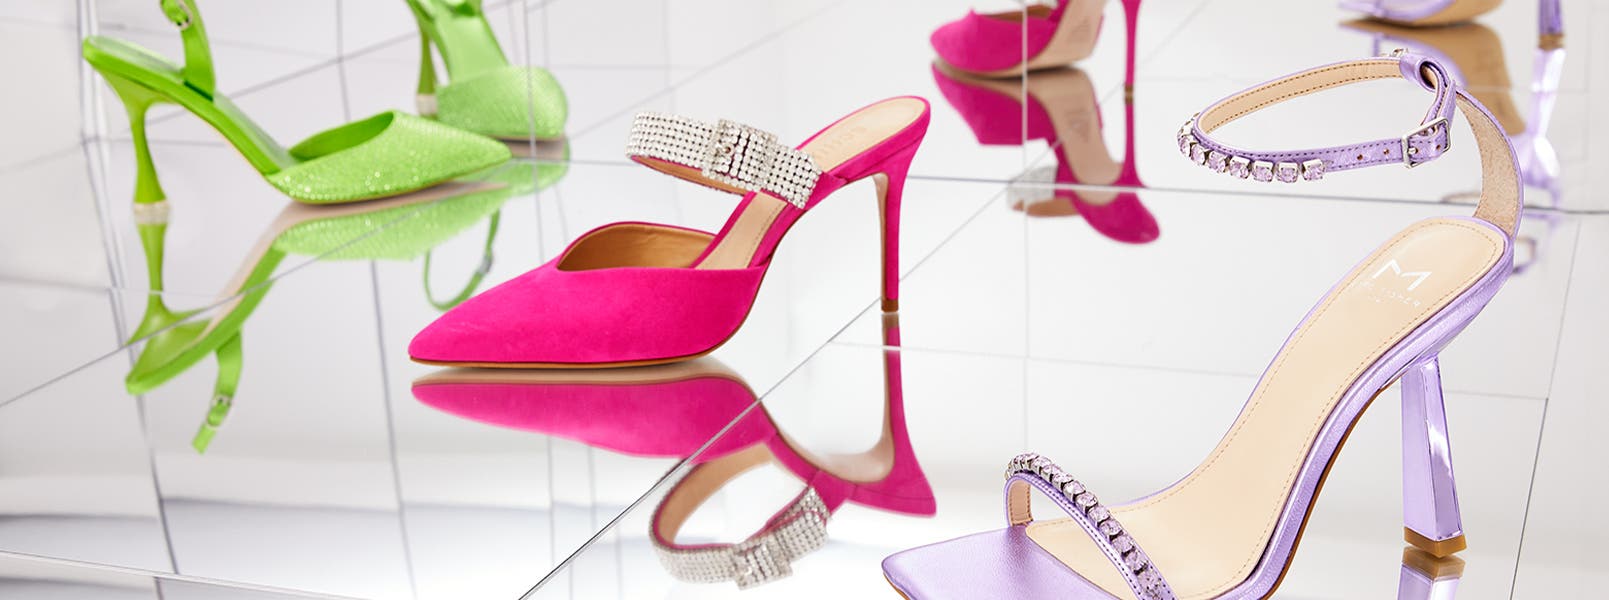 Colorful embellished heels.